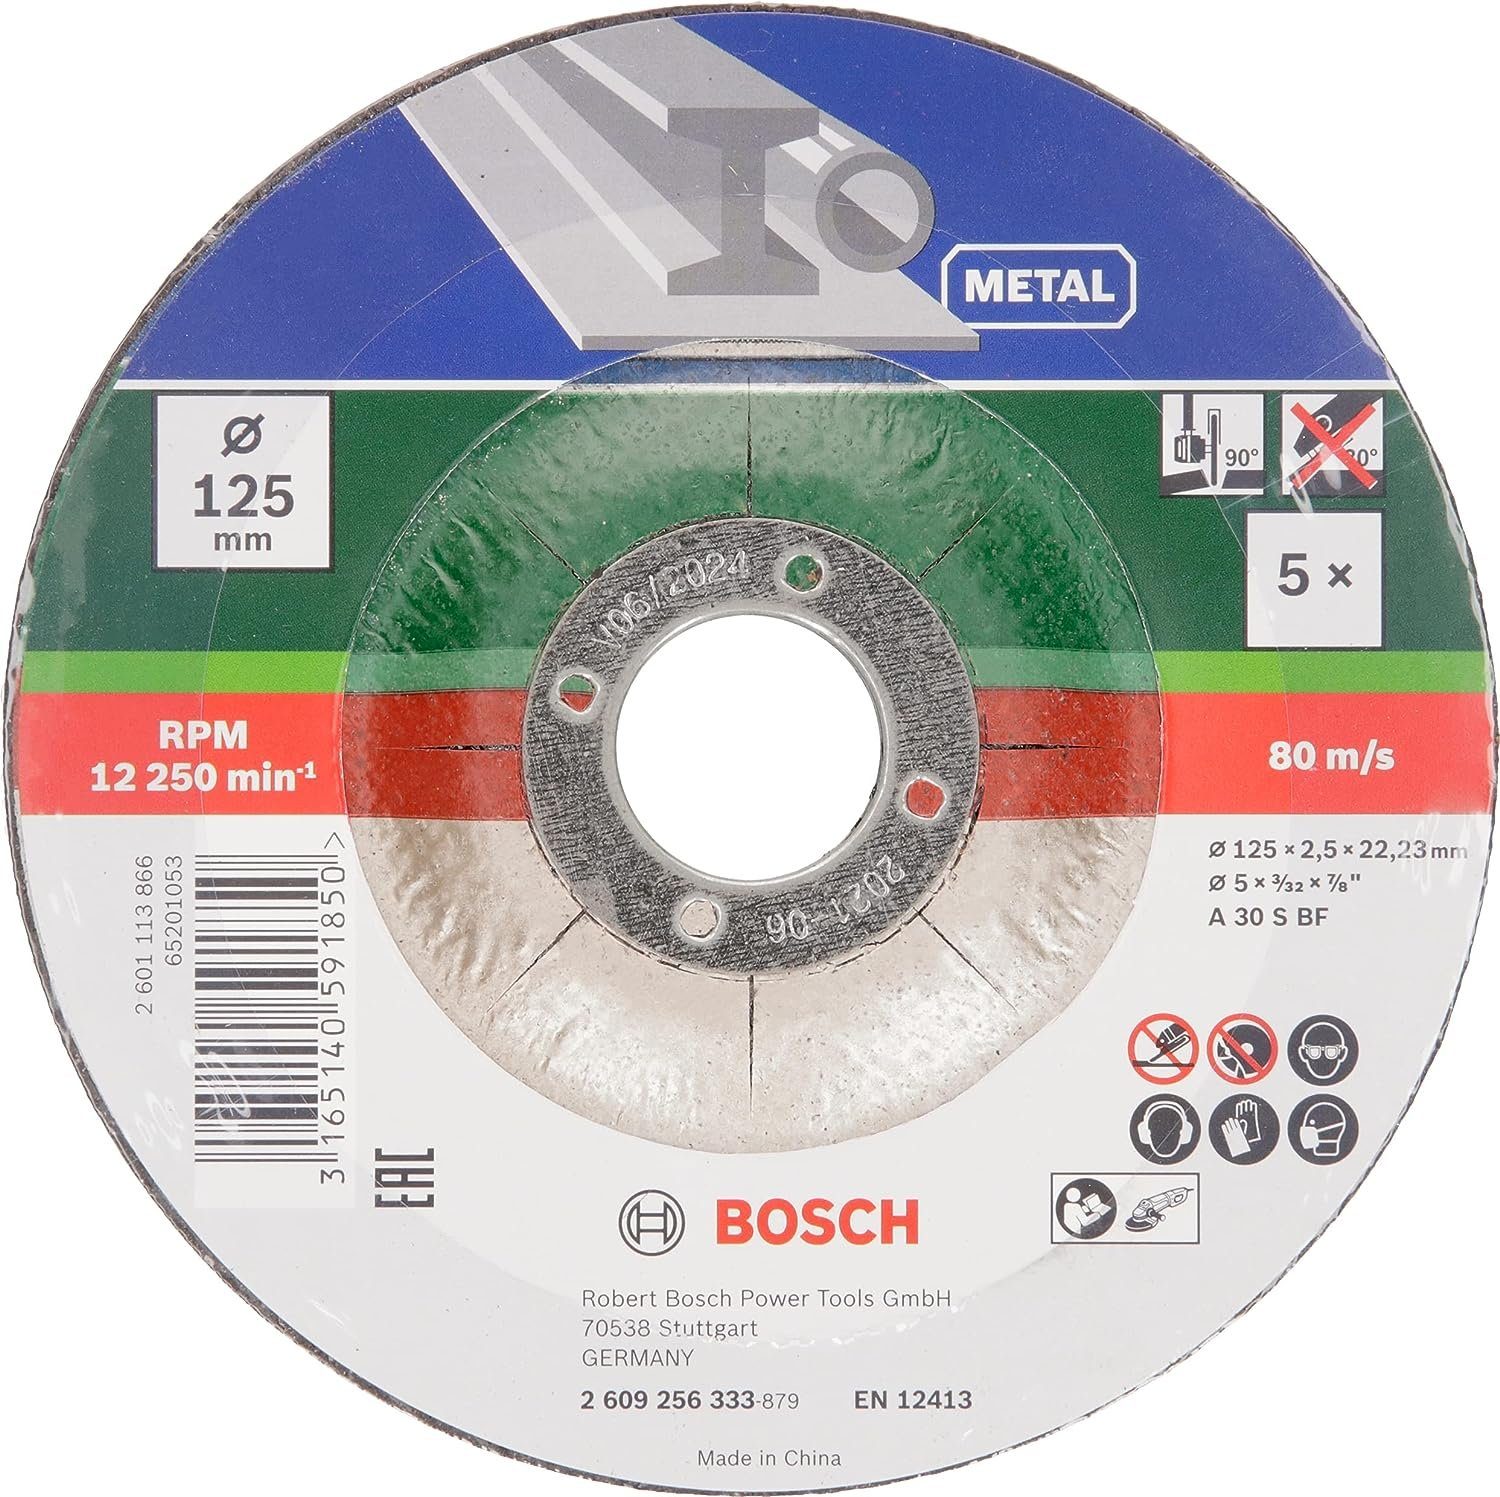 BOSCH Bohrfutter 5 x Bosch Trennscheibe A 30 S BF 125 mm 2,5 mm gekröpft for Metal